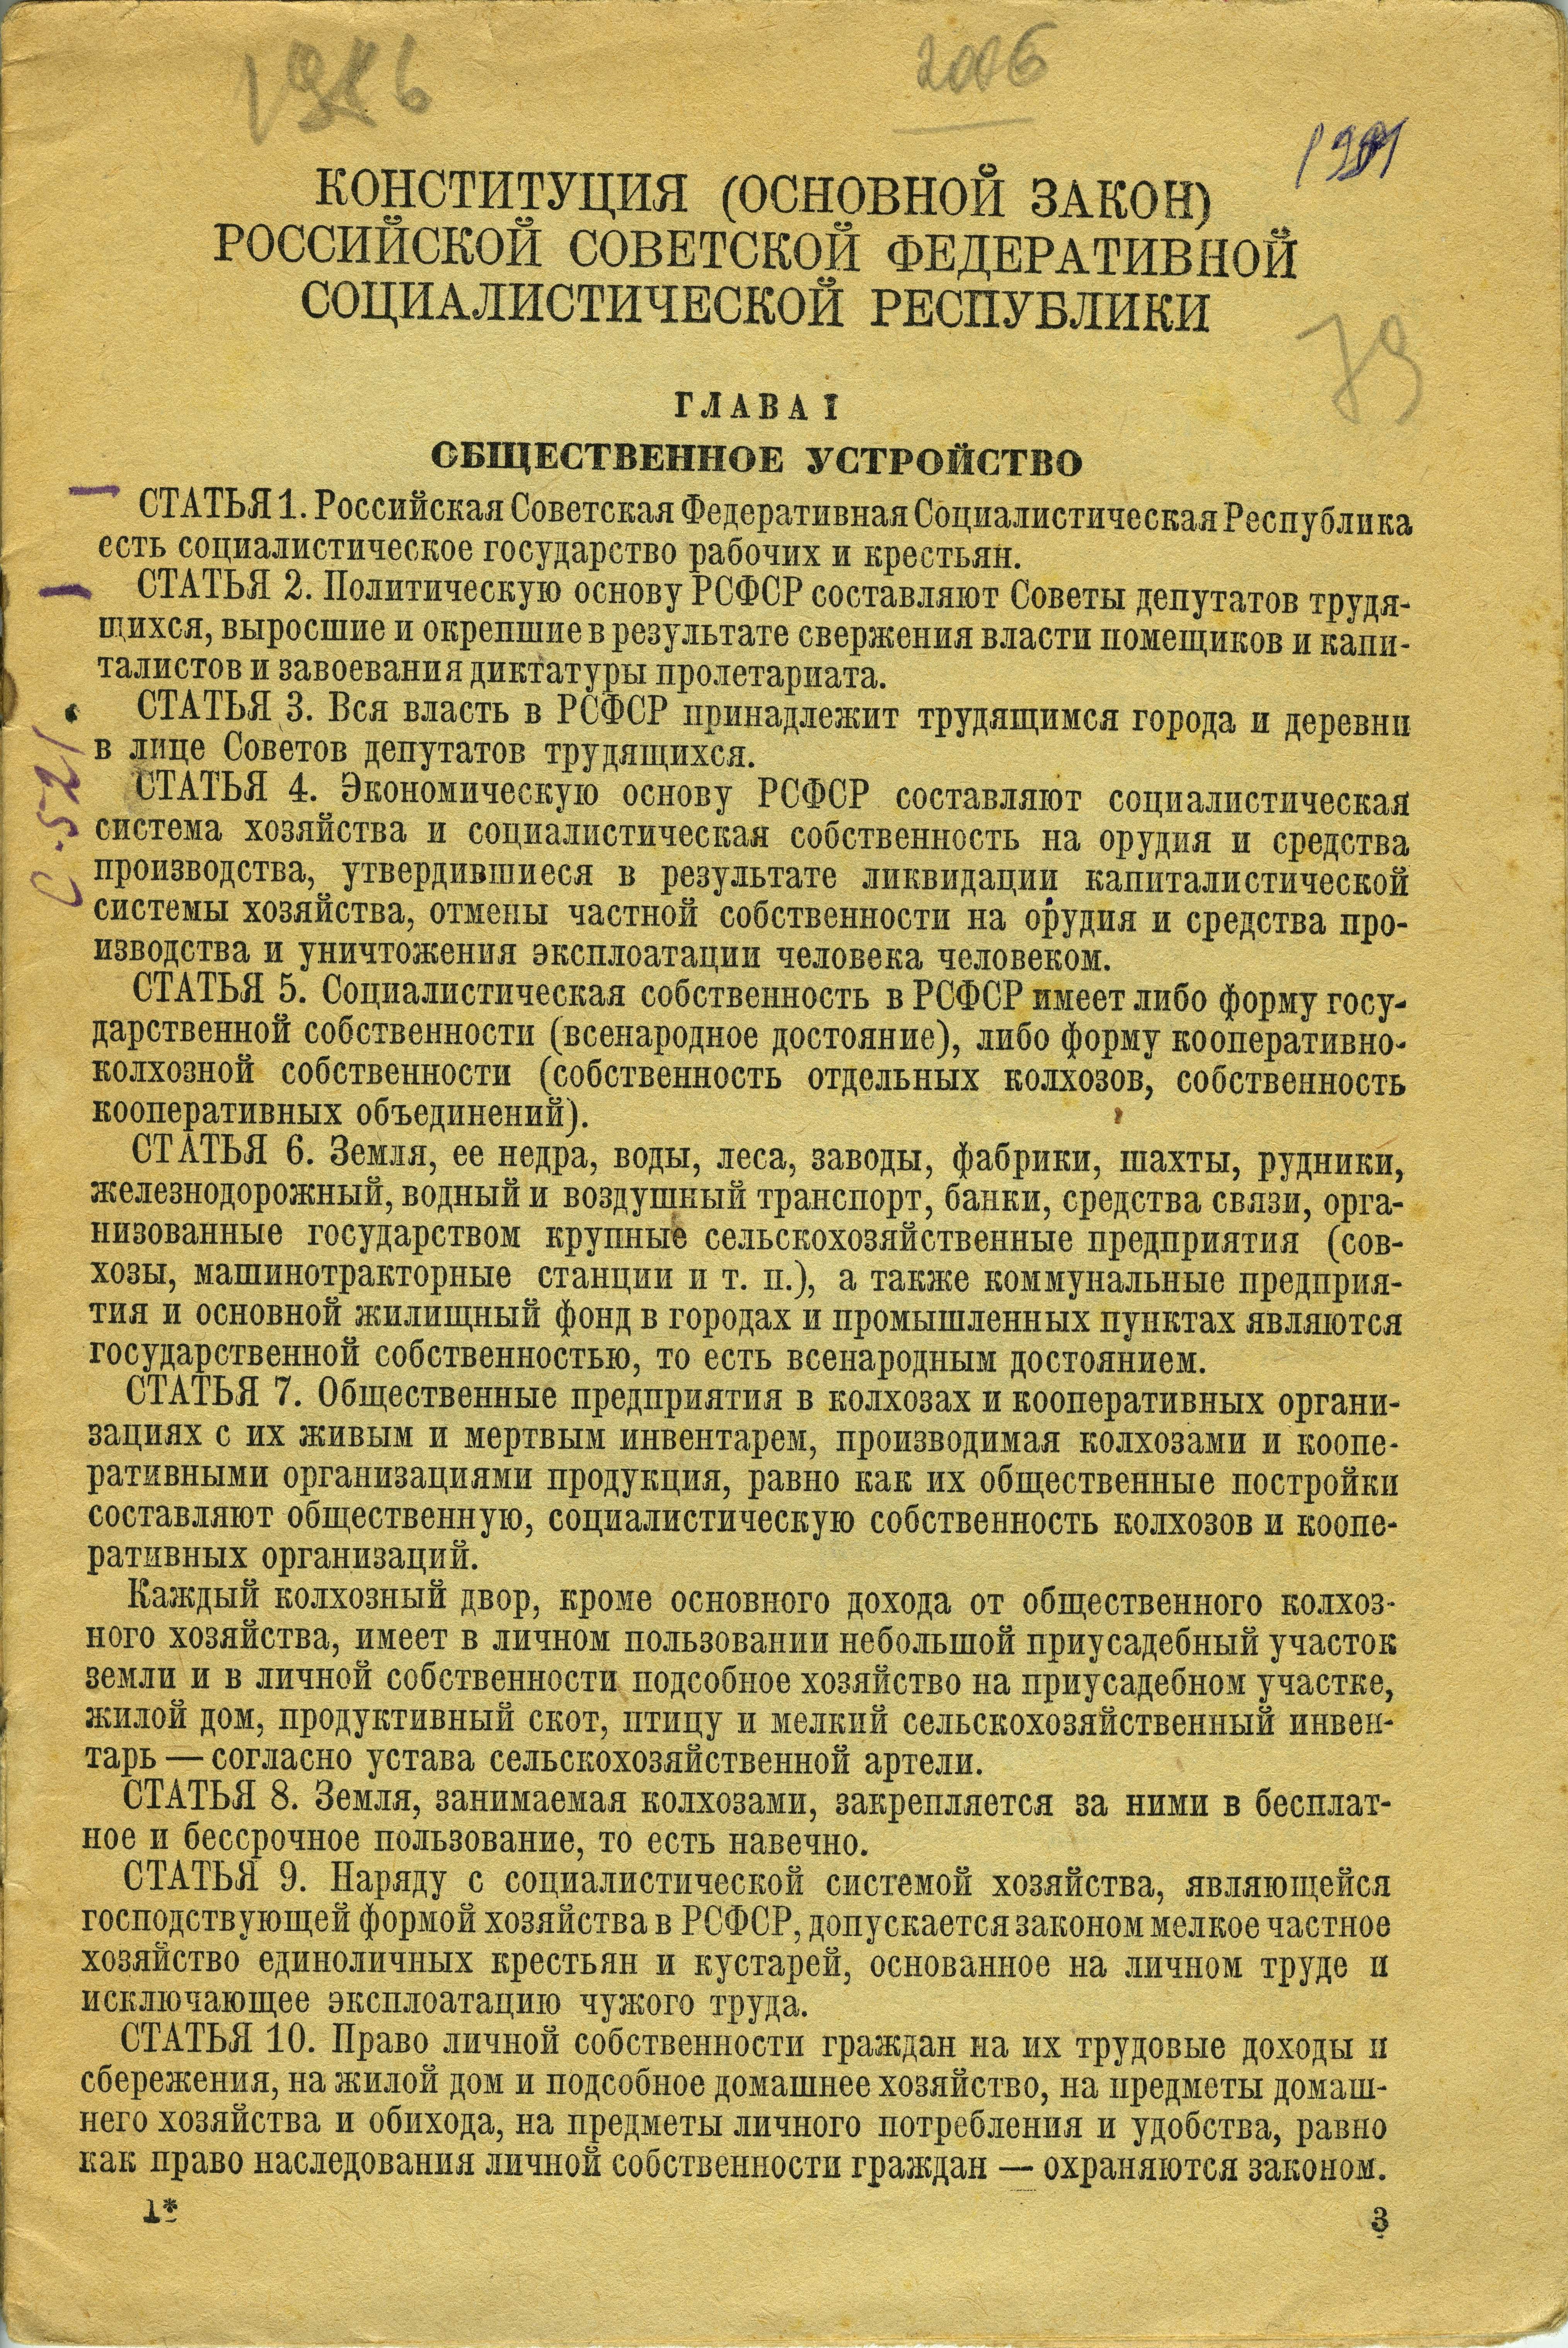 НСБ ГАТО. Конституция Российской Советской Федеративной Социалистической Республики 1936 г. М.: ГИПЛ, 1938. С. 1